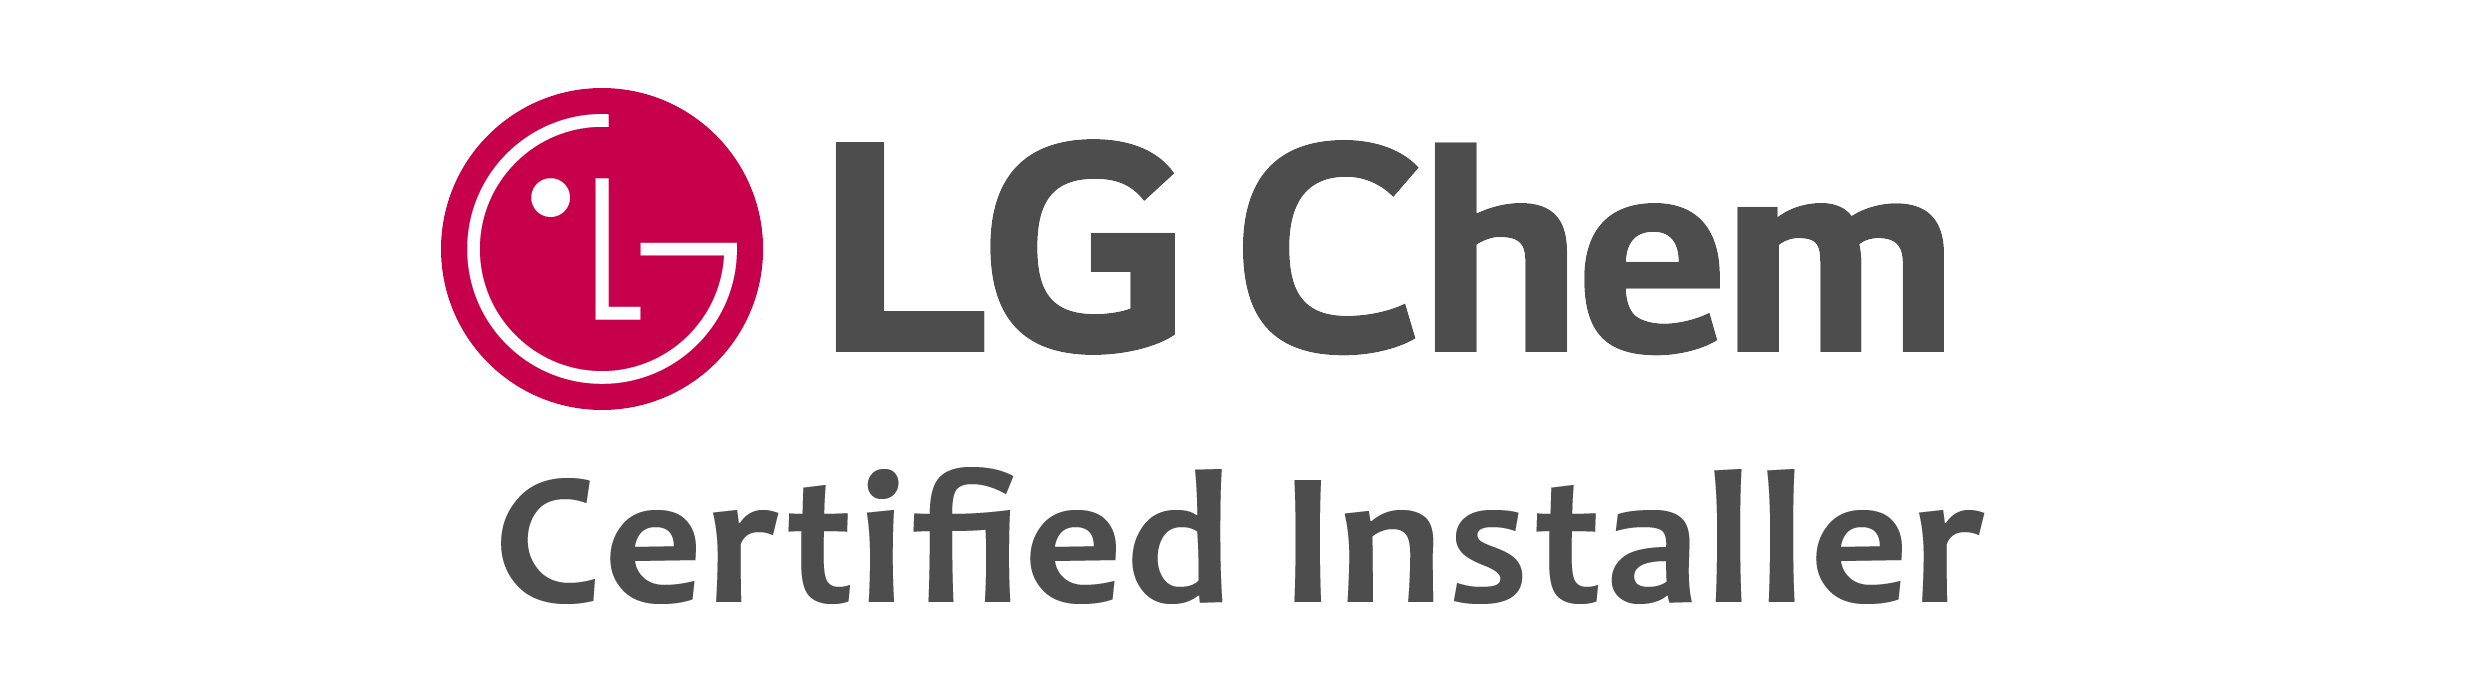 LG-Chem-LOGOci.jpg